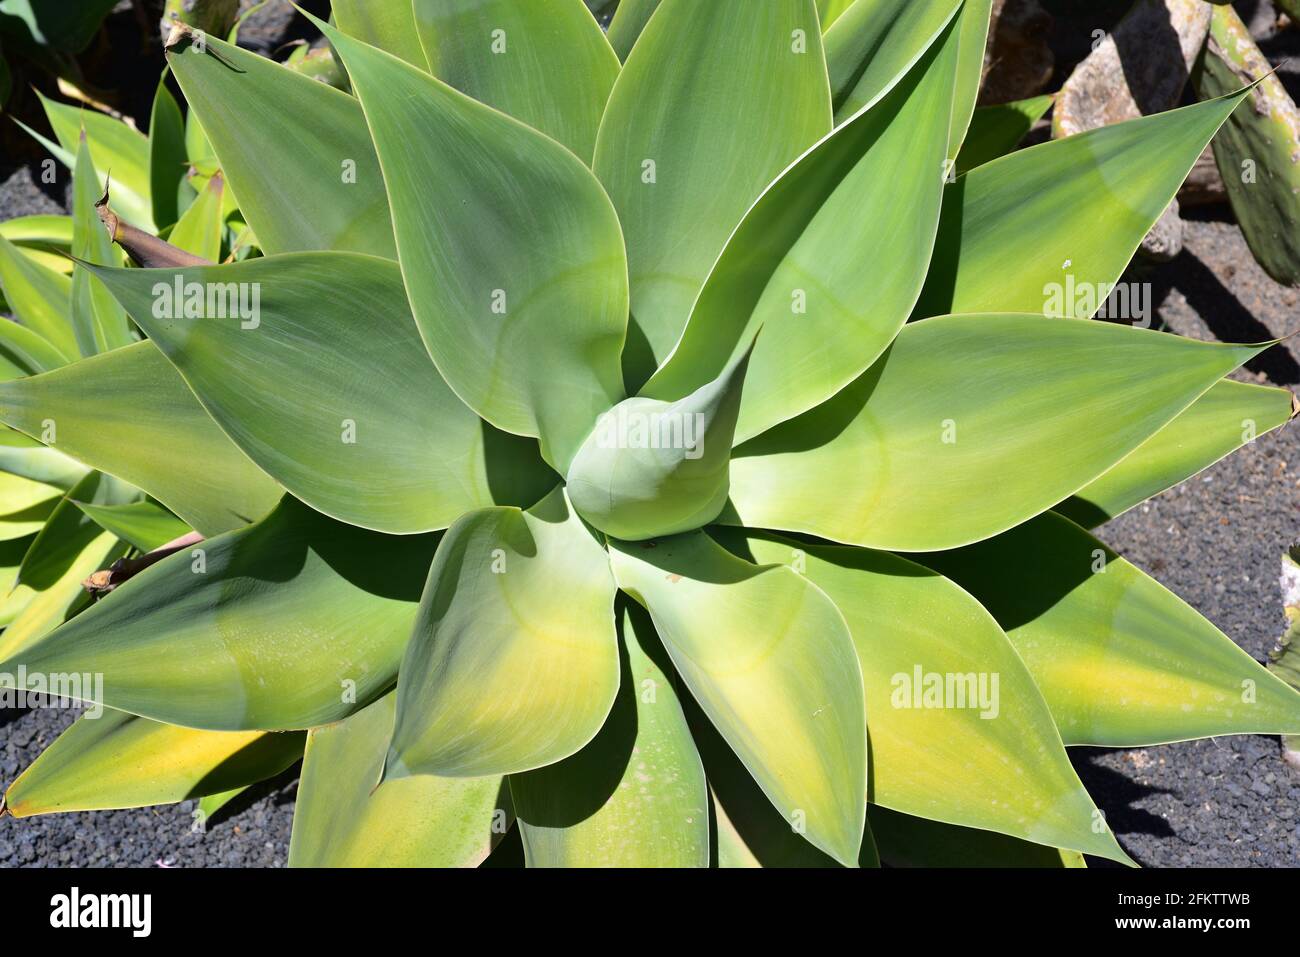 Foxtail o agave del collo del cigno (Agave attenuata) è una pianta ornamentale succulente endemica del Messico centrale. Rosetta. Foto Stock